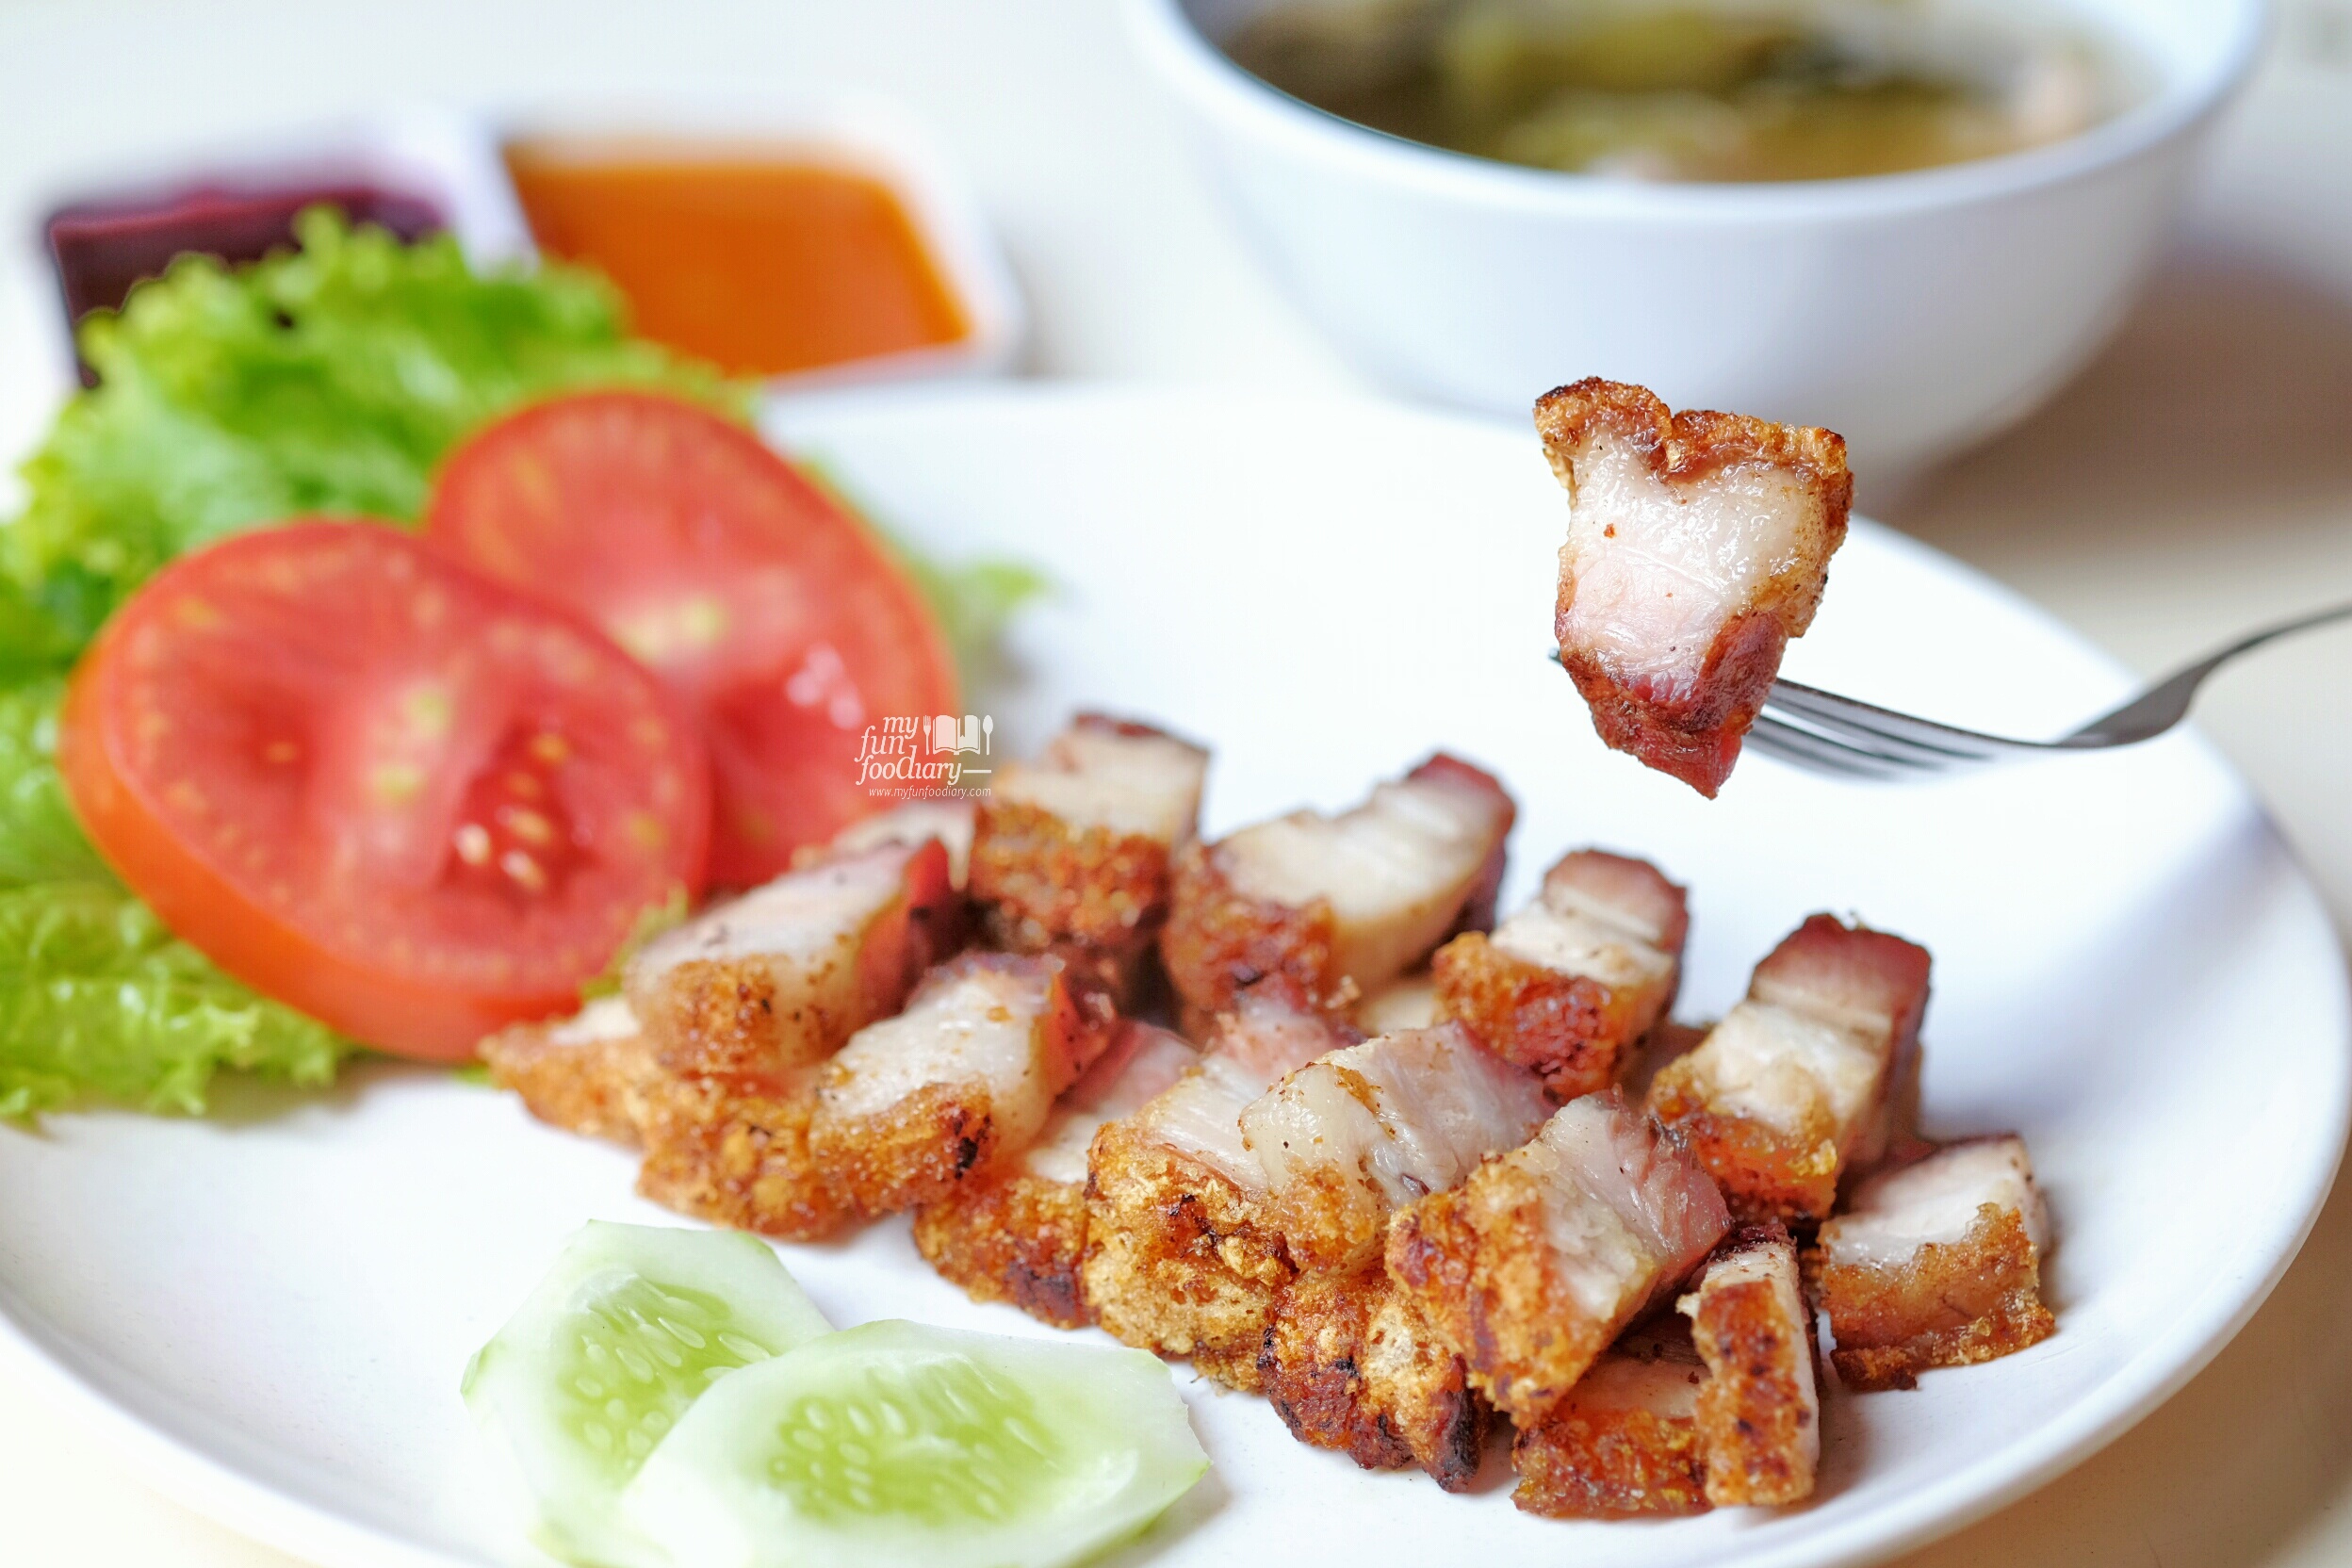 Siobak or Samcan (Roast Pork) - IDR 40K